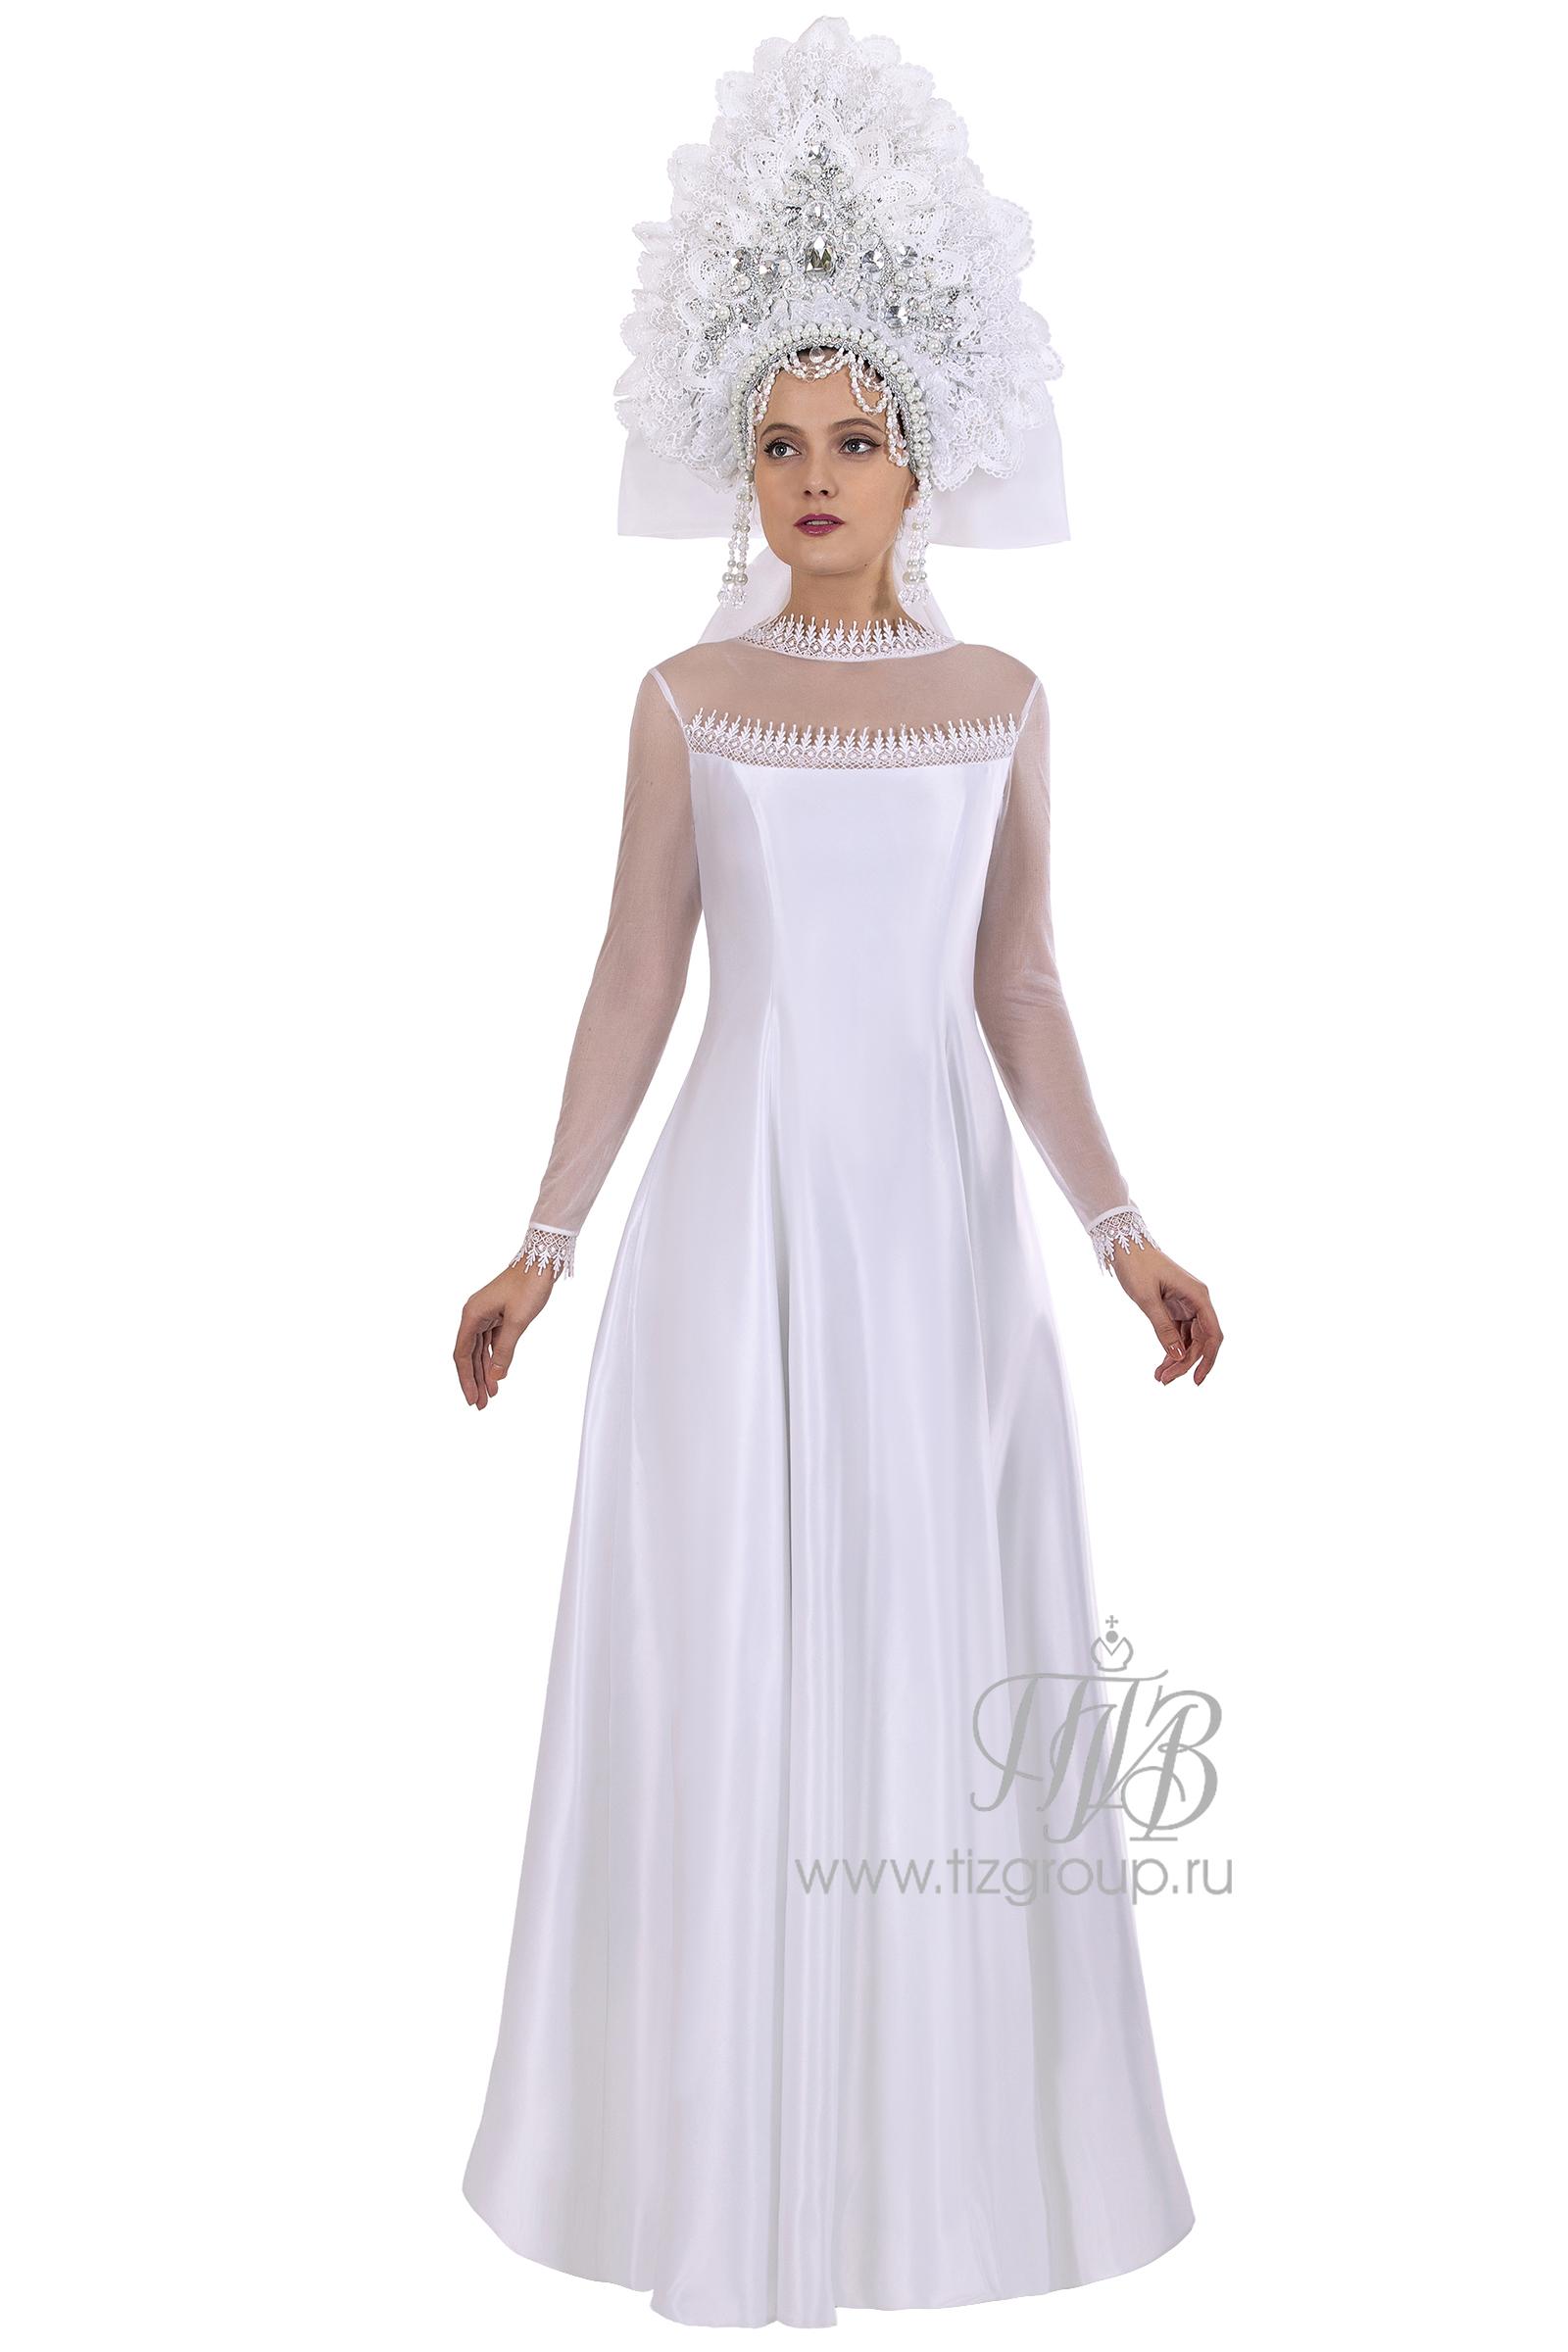 Греческие свадебные платья купить или напрокат